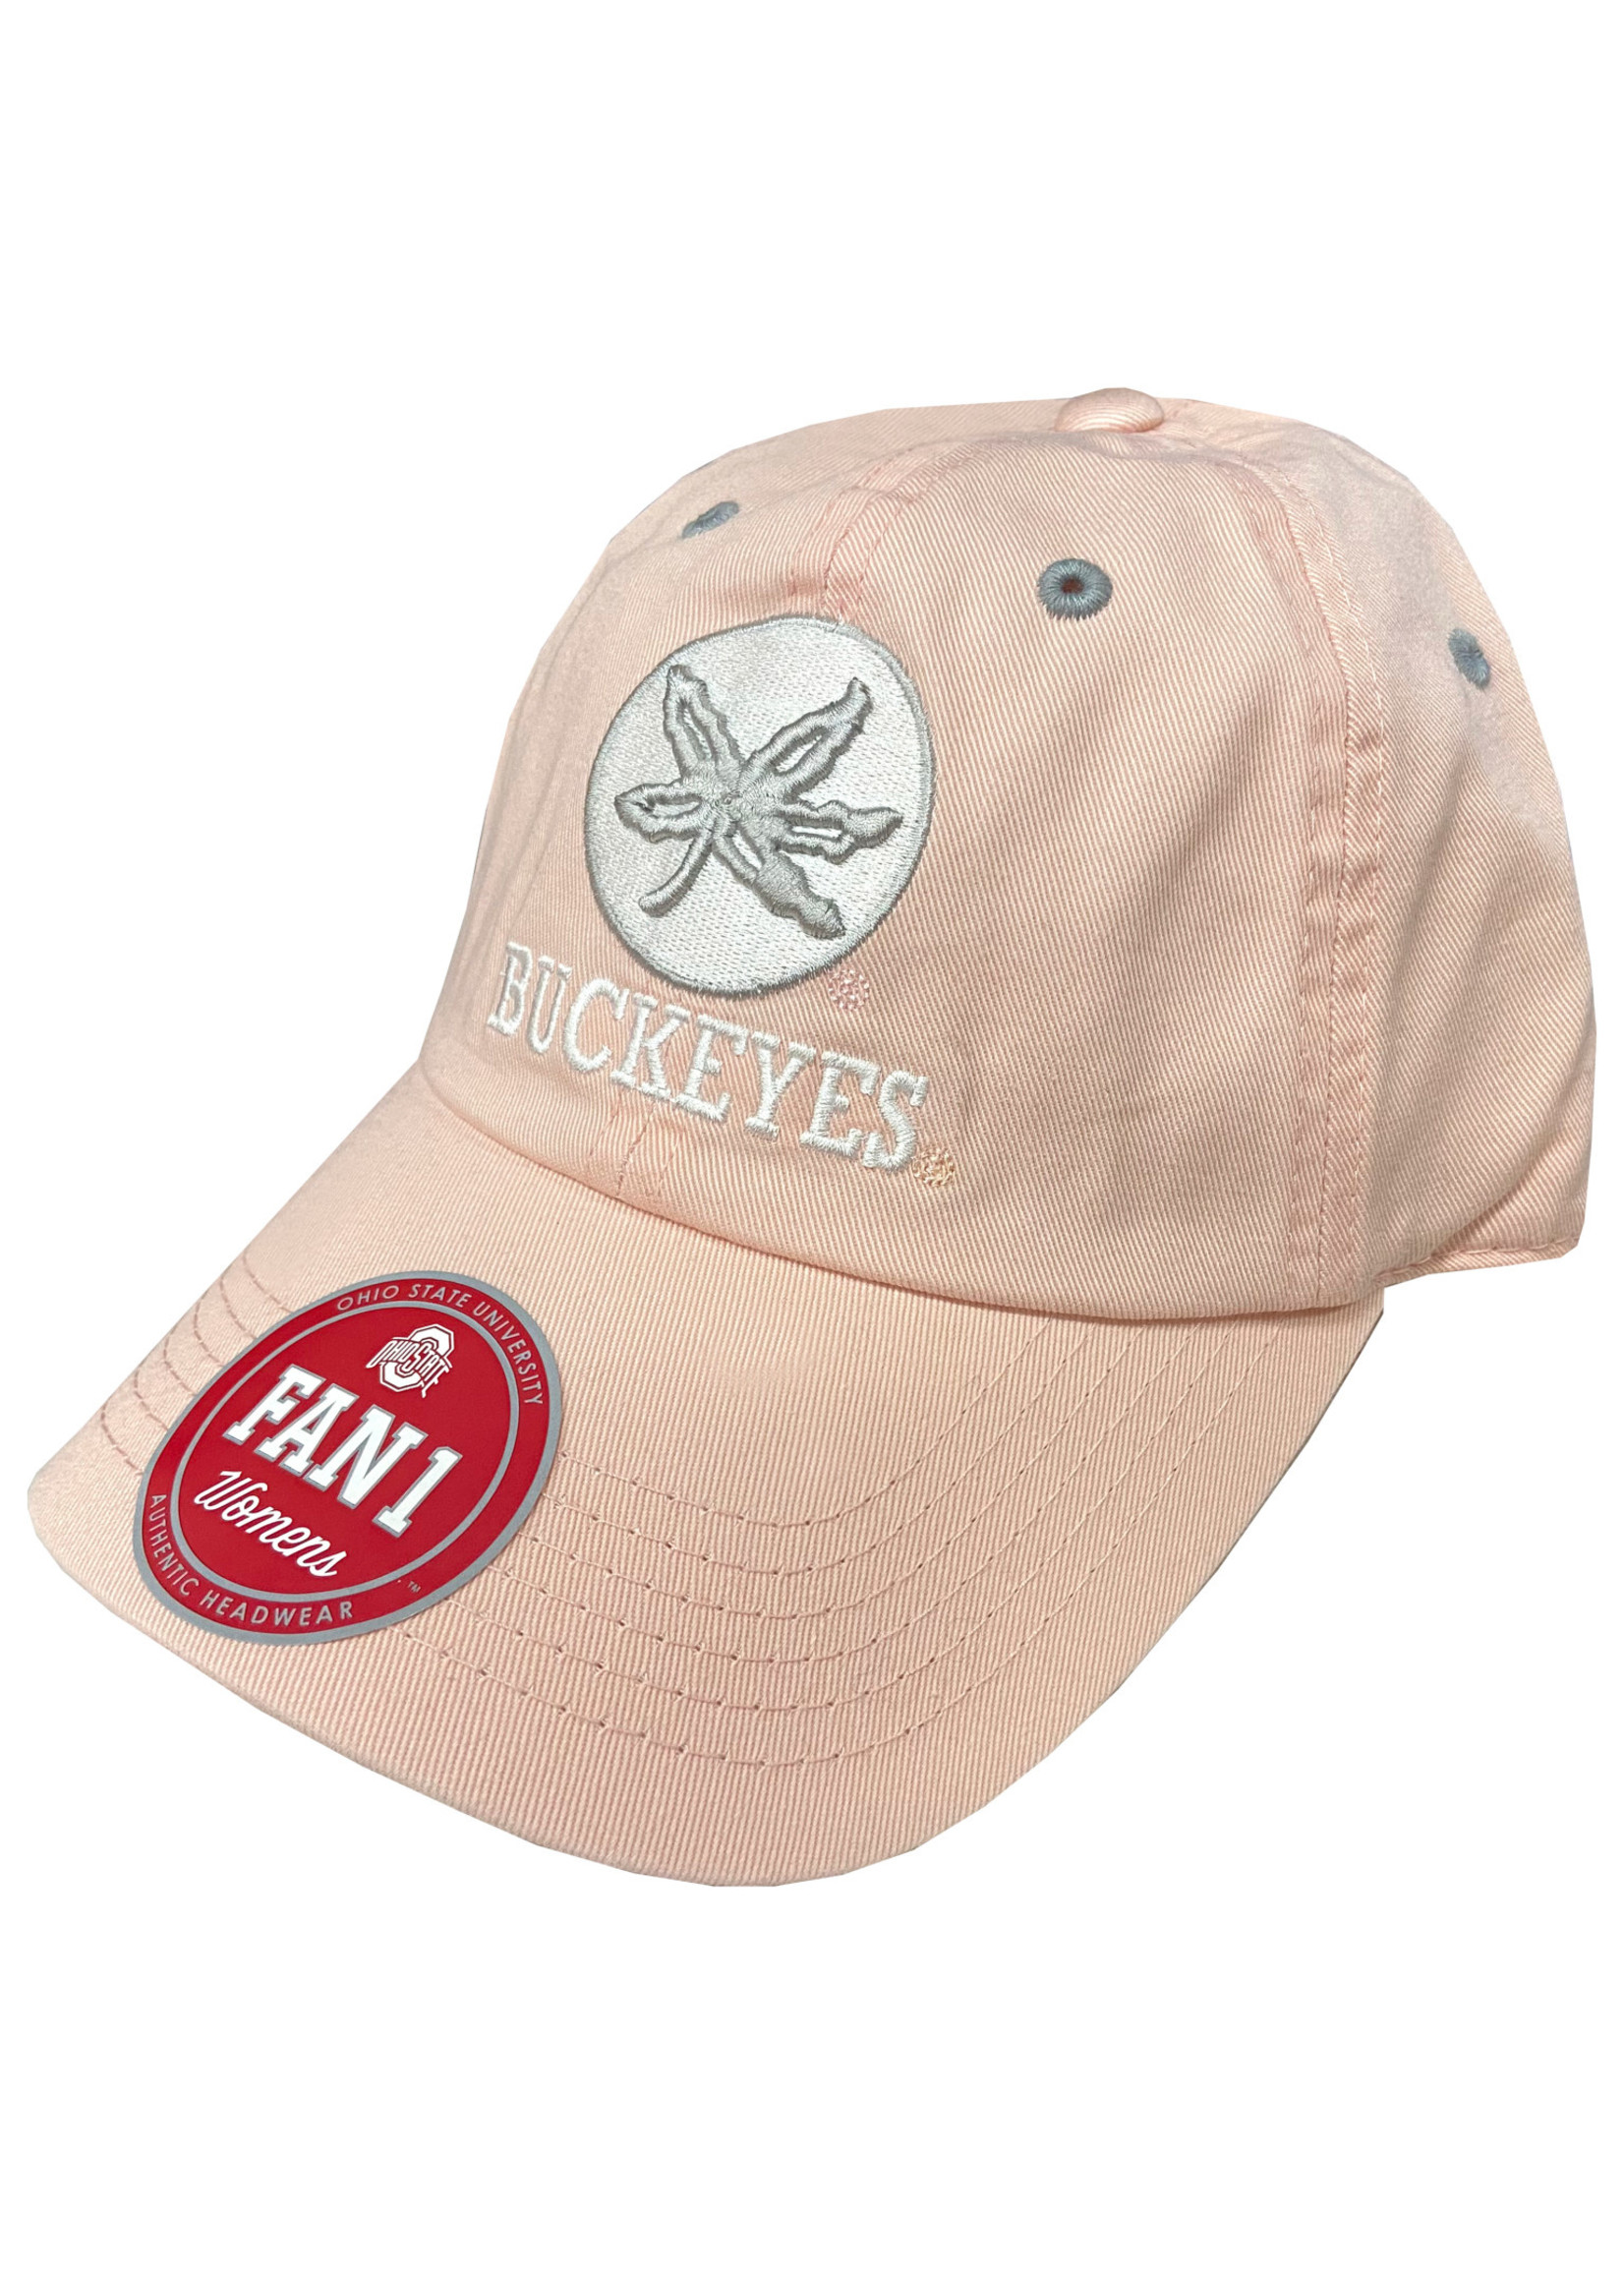 Ohio State Buckeyes Pink Women's Adjustable Hat